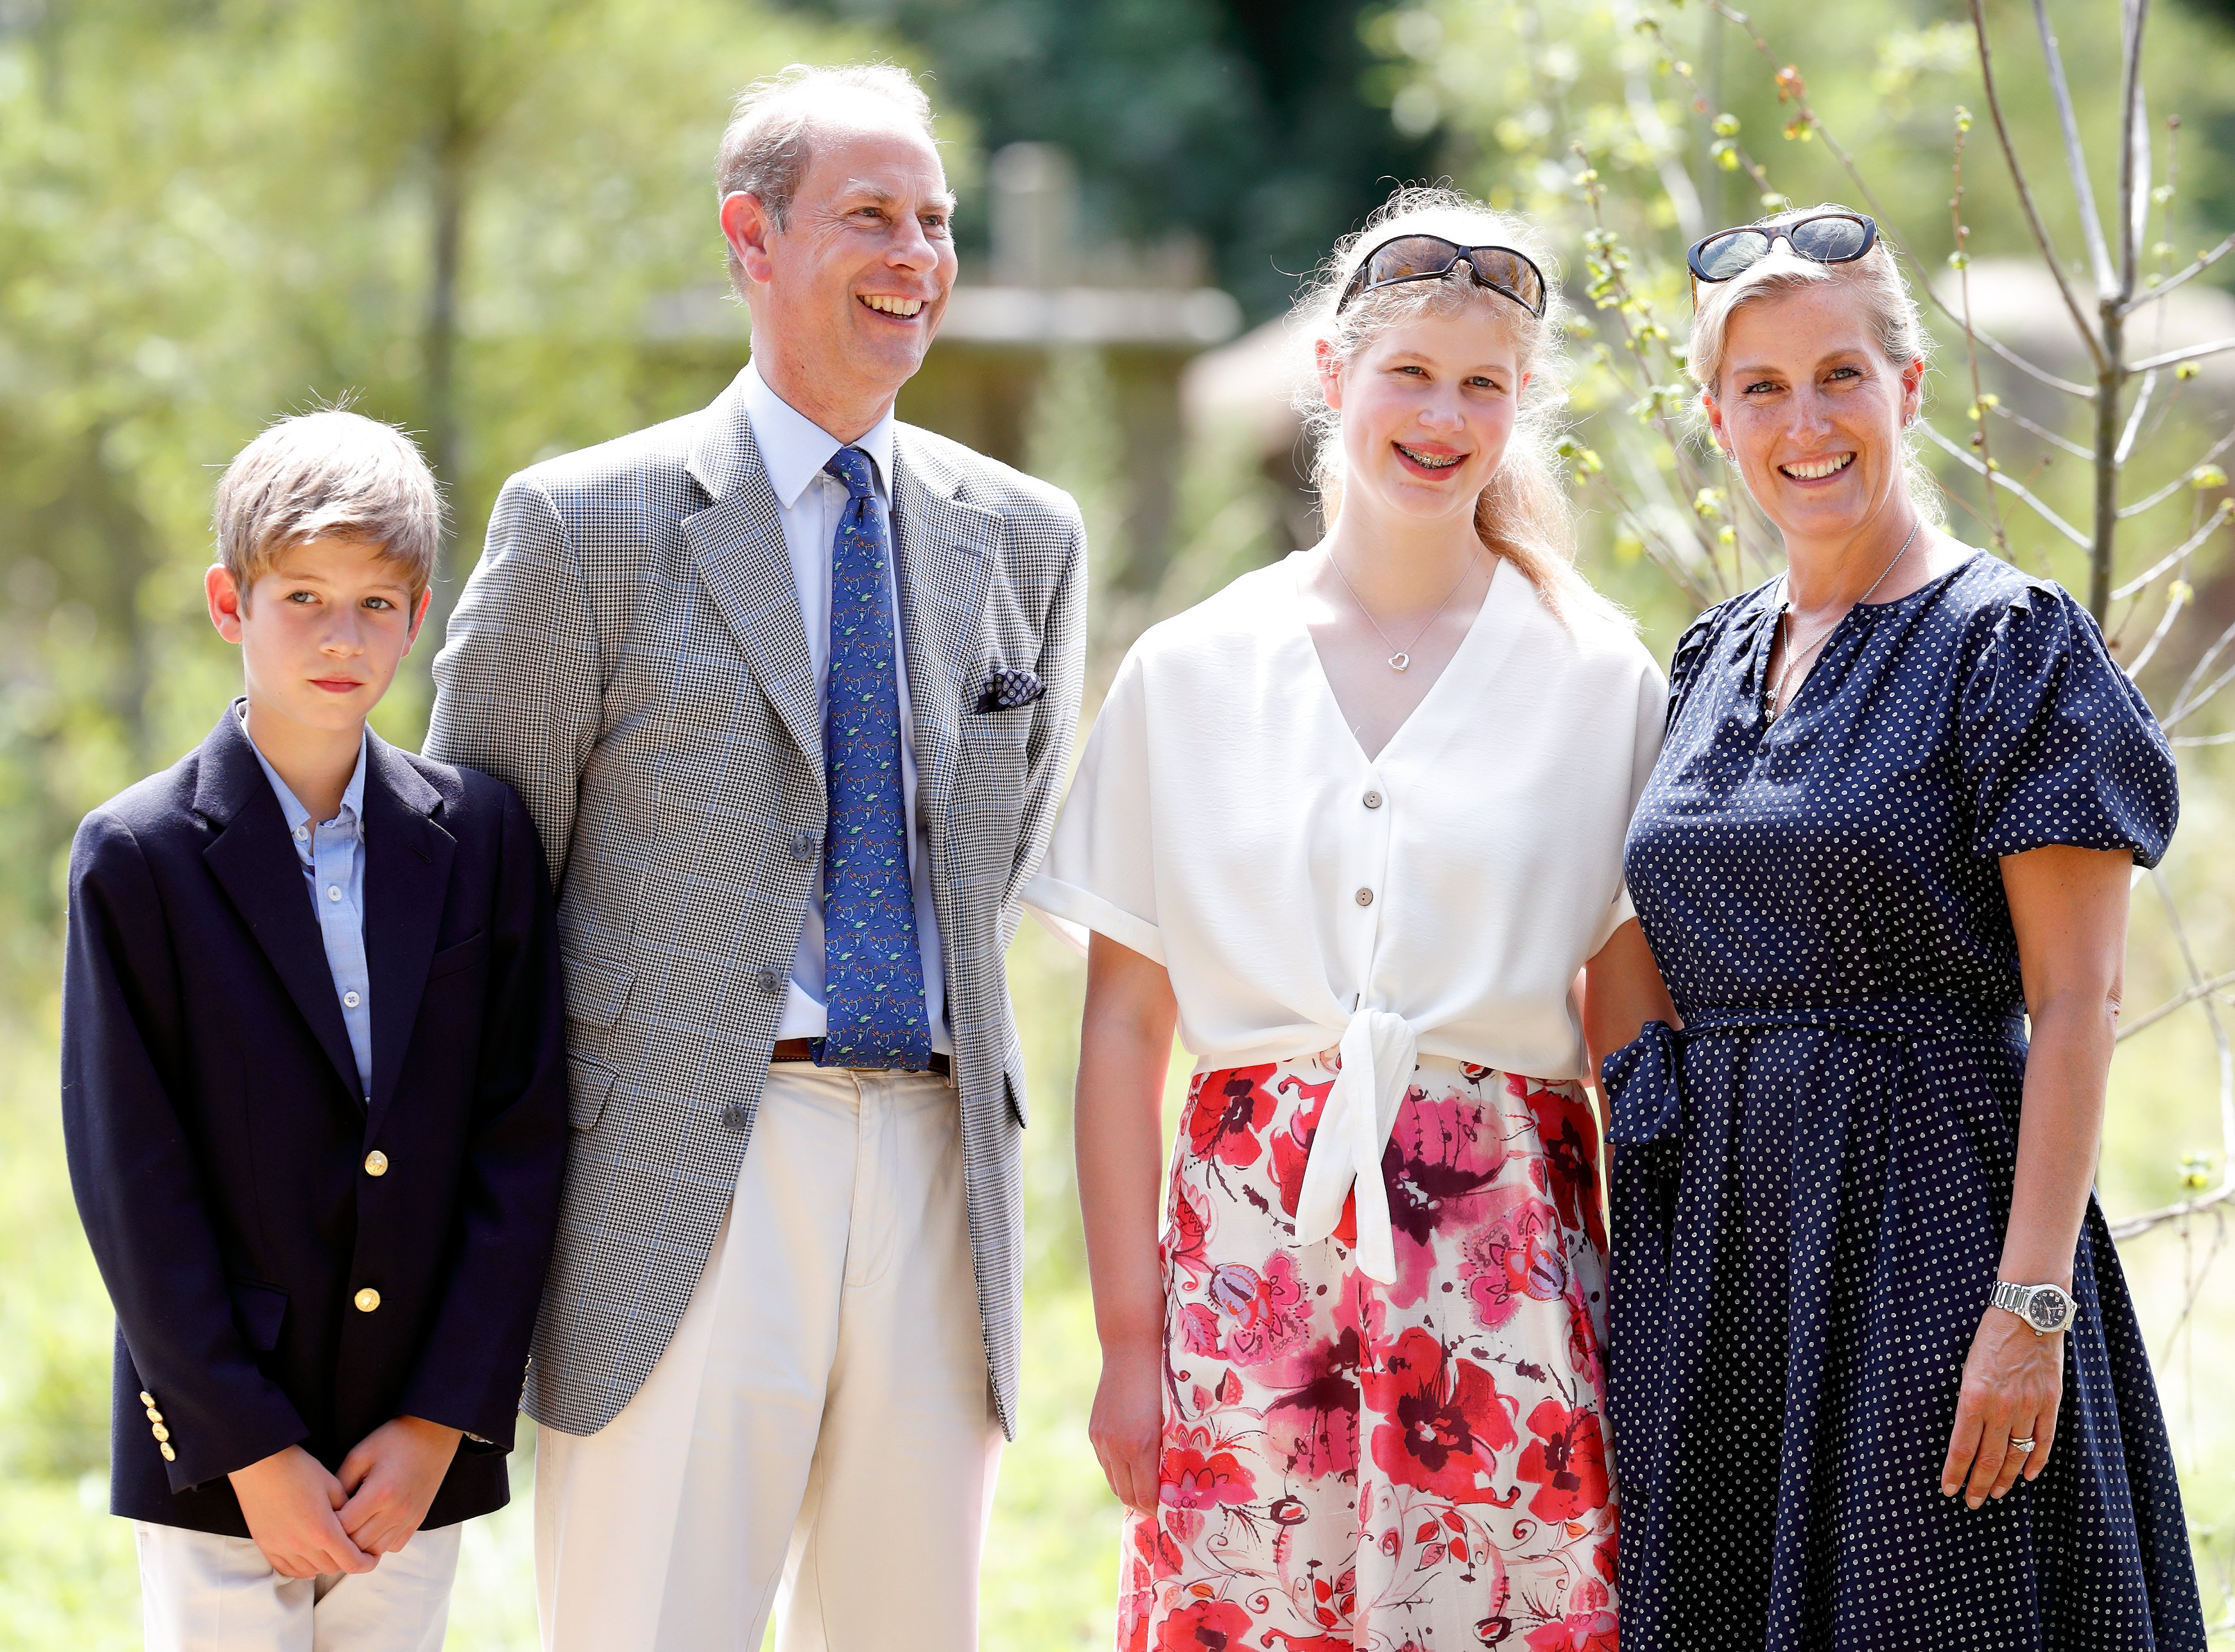 James, vicomte Severn, le prince Edward, Lady Louise Windsor, et Sophie, comtesse de Wessex visitent le projet Wild Place le 23 juillet 2019, à Bristol, en Angleterre | Source : Getty Images